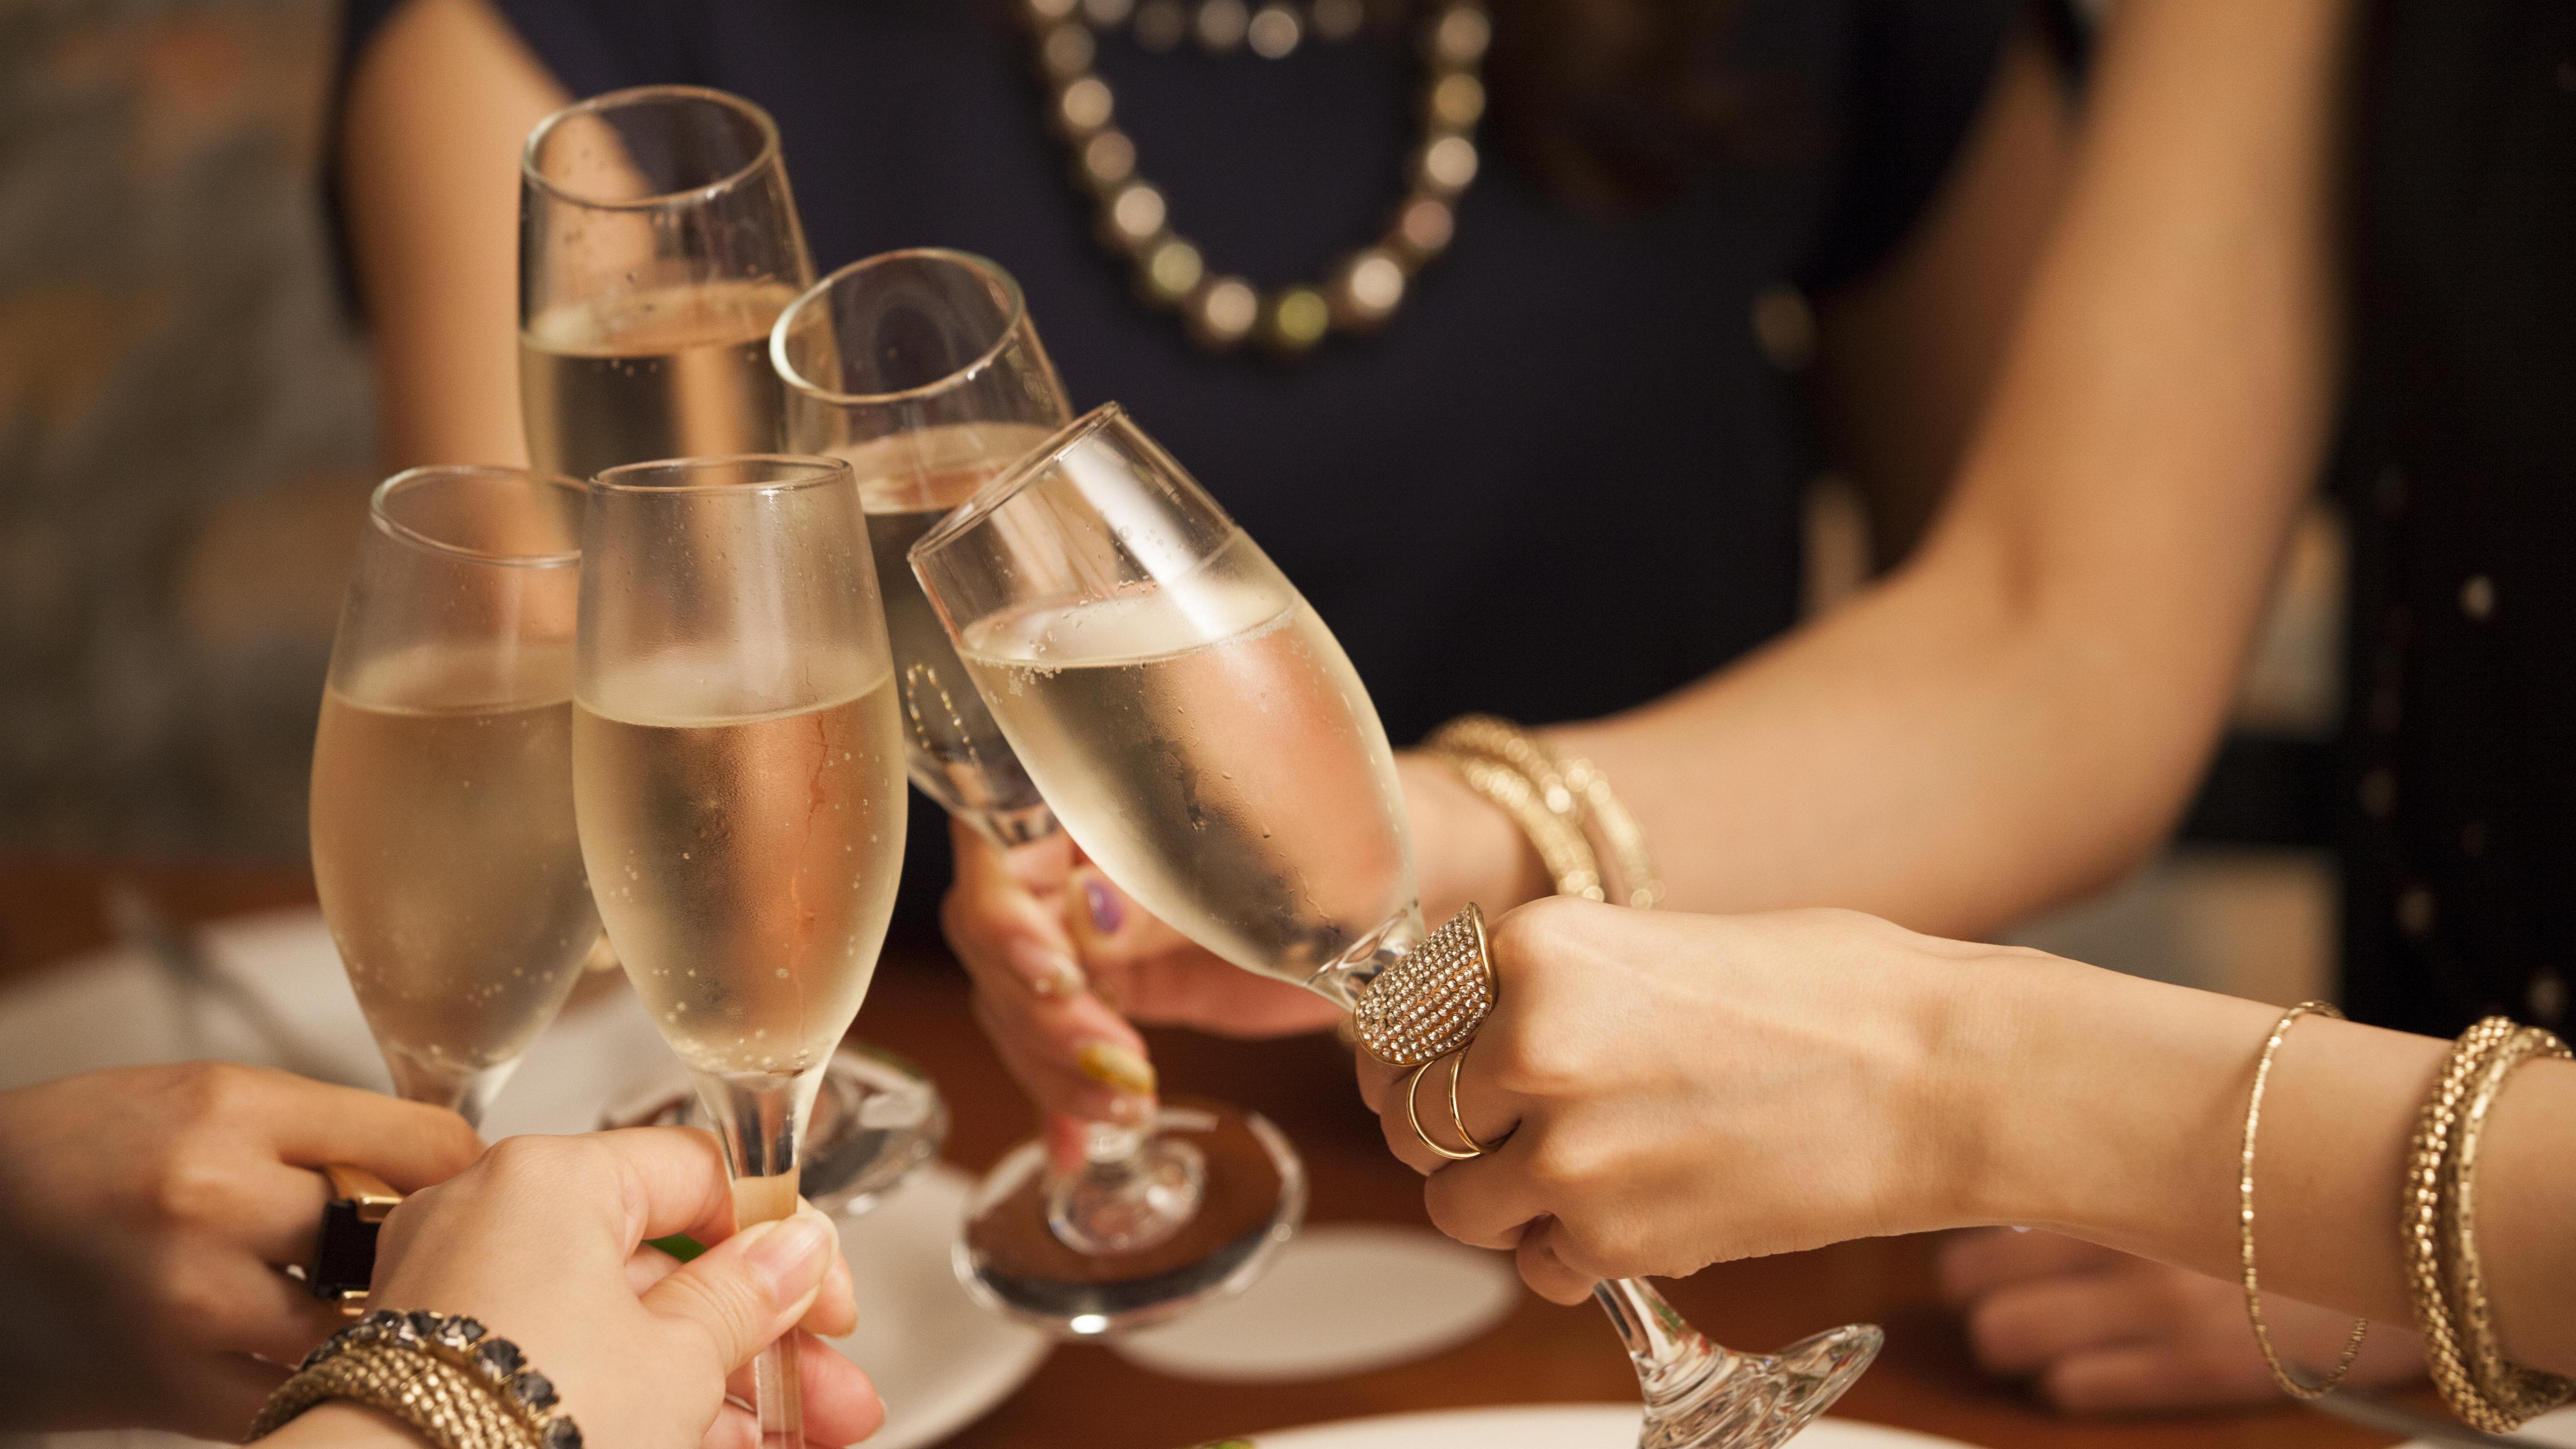 British women top list of world’s biggest binge drinkers